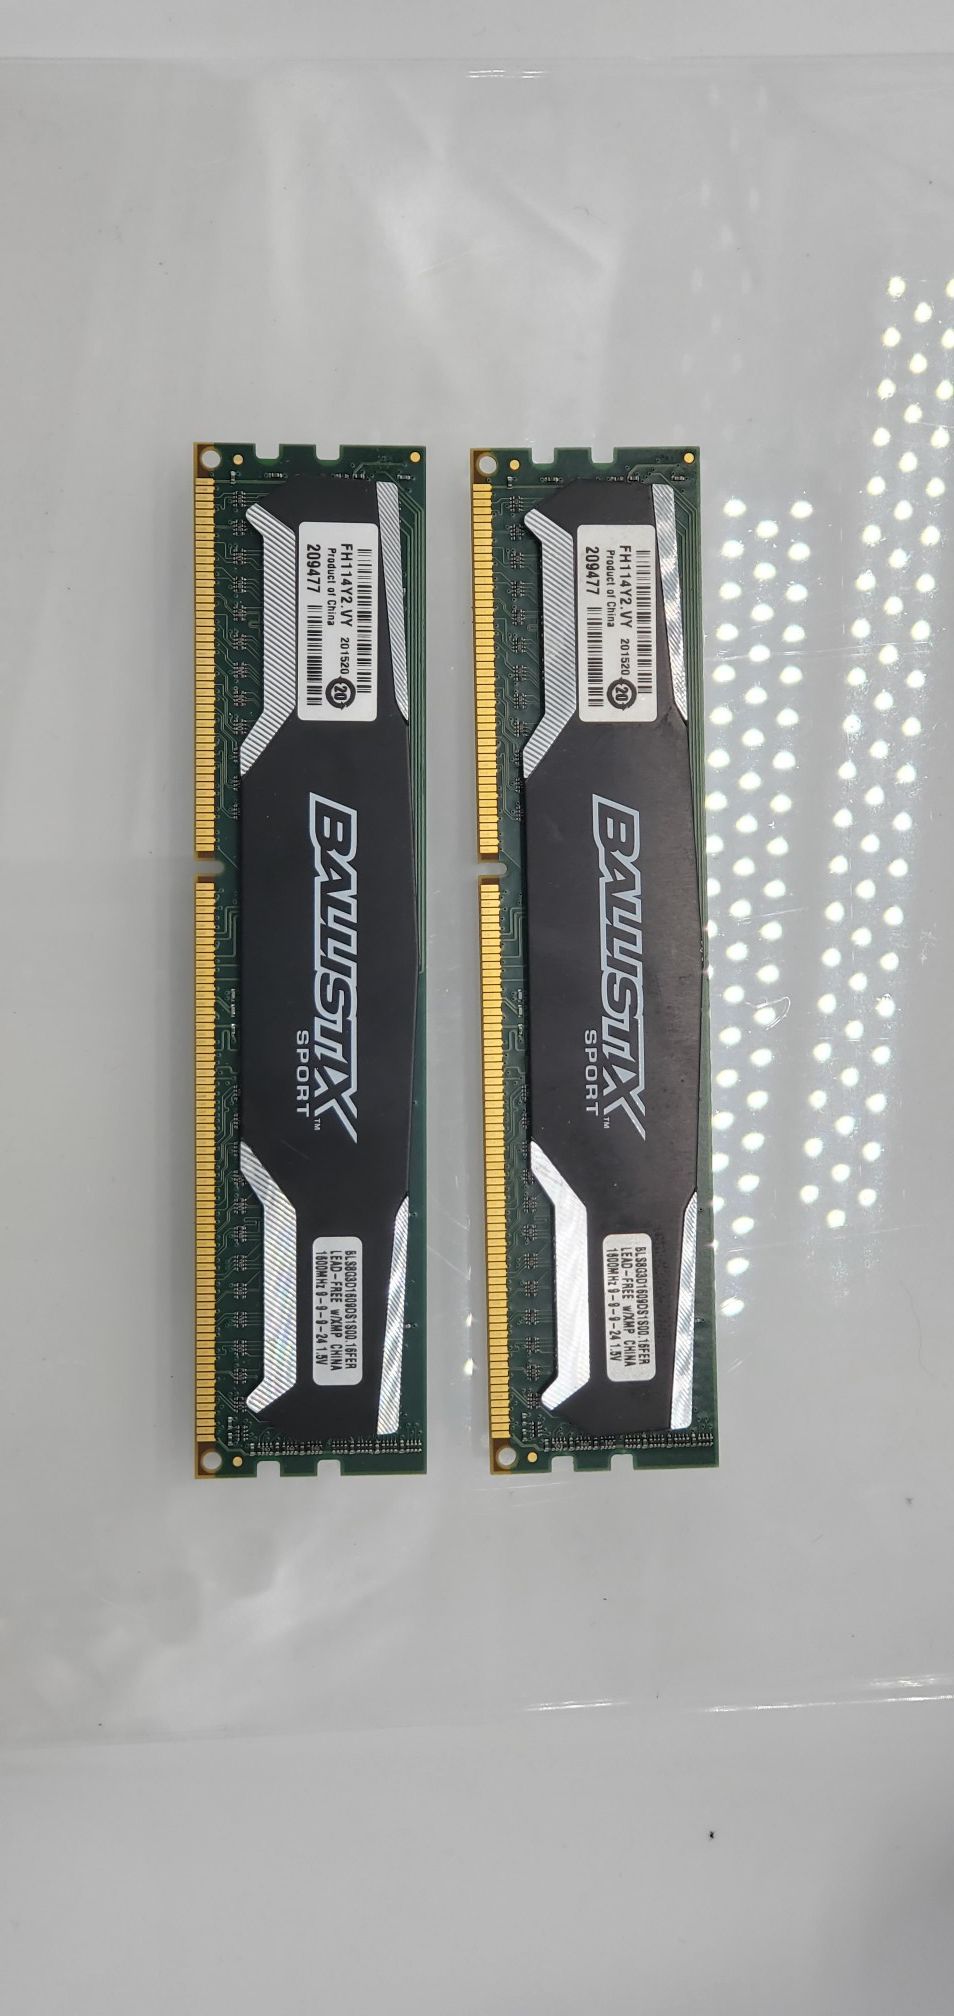 Ballistix 16GB 2X8GB DDR3 1600 BLS8G3D1609DS1S00.16FER XMP DIMM Desktop Memory